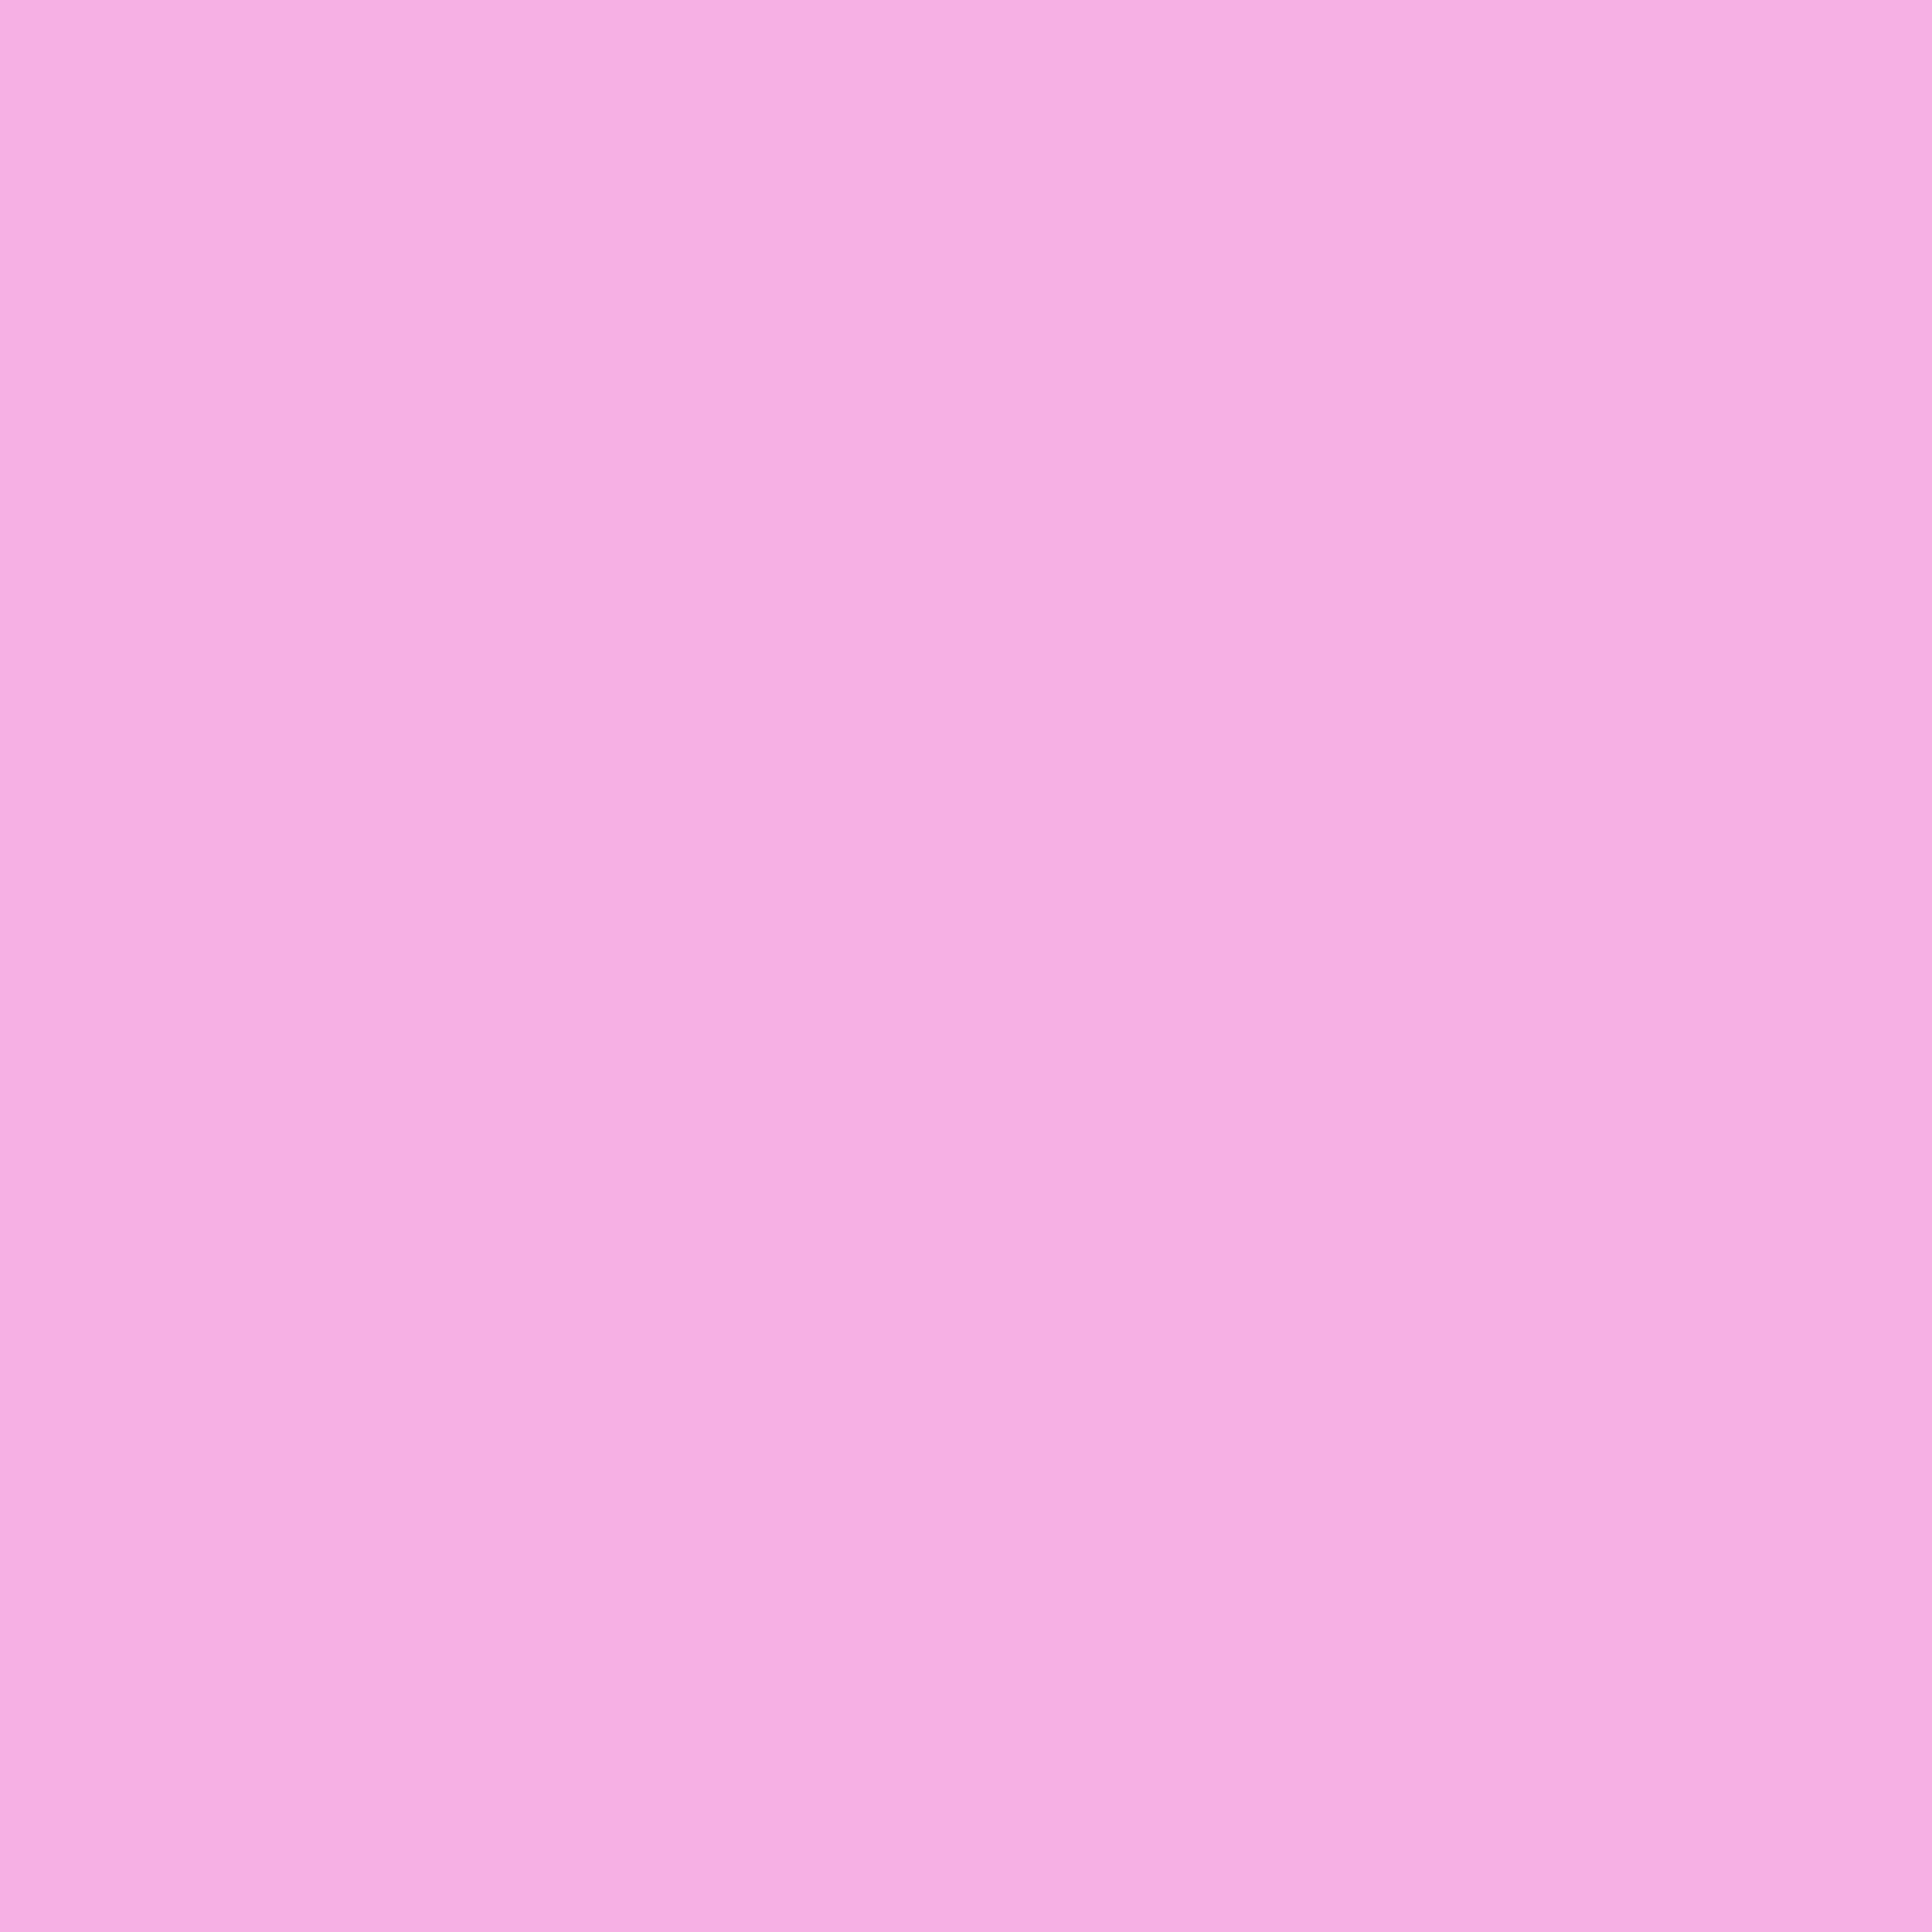 Pink Background Pastel Plain gambar ke 9